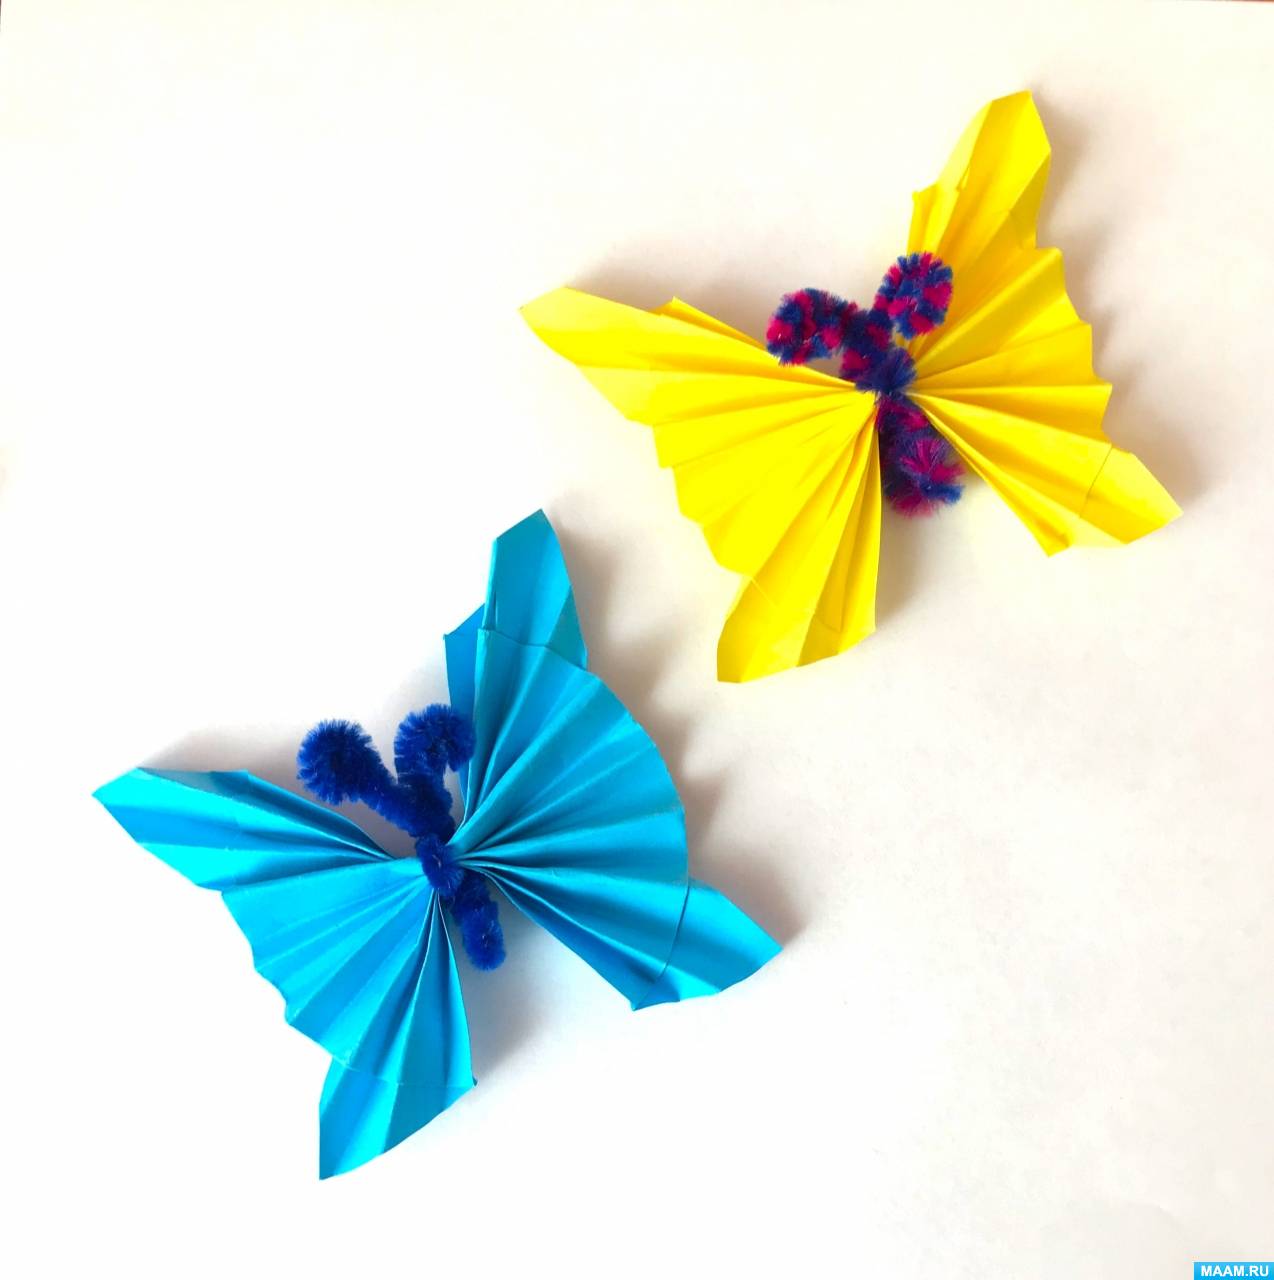 Мастер-класс по созданию поделки из бумаги, сложенной гармошкой, и синельной проволоки «Бабочка» для старших дошкольников